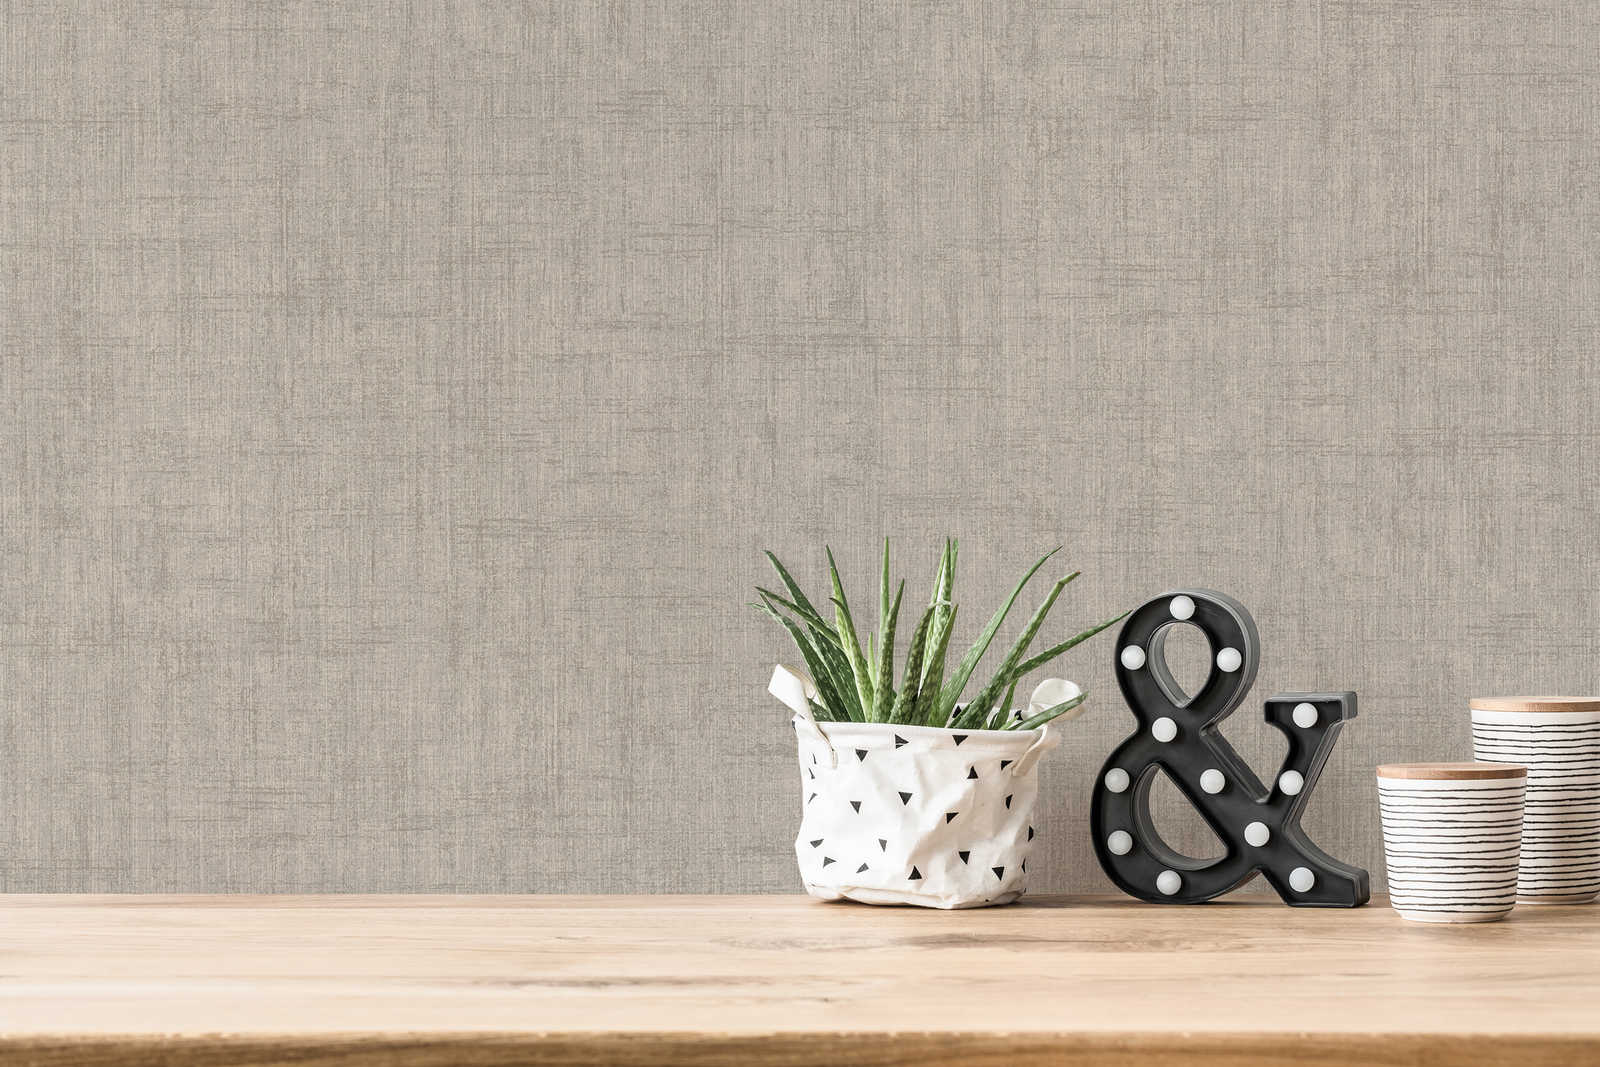             Greige wallpaper, coarse linen look - grey, beige
        